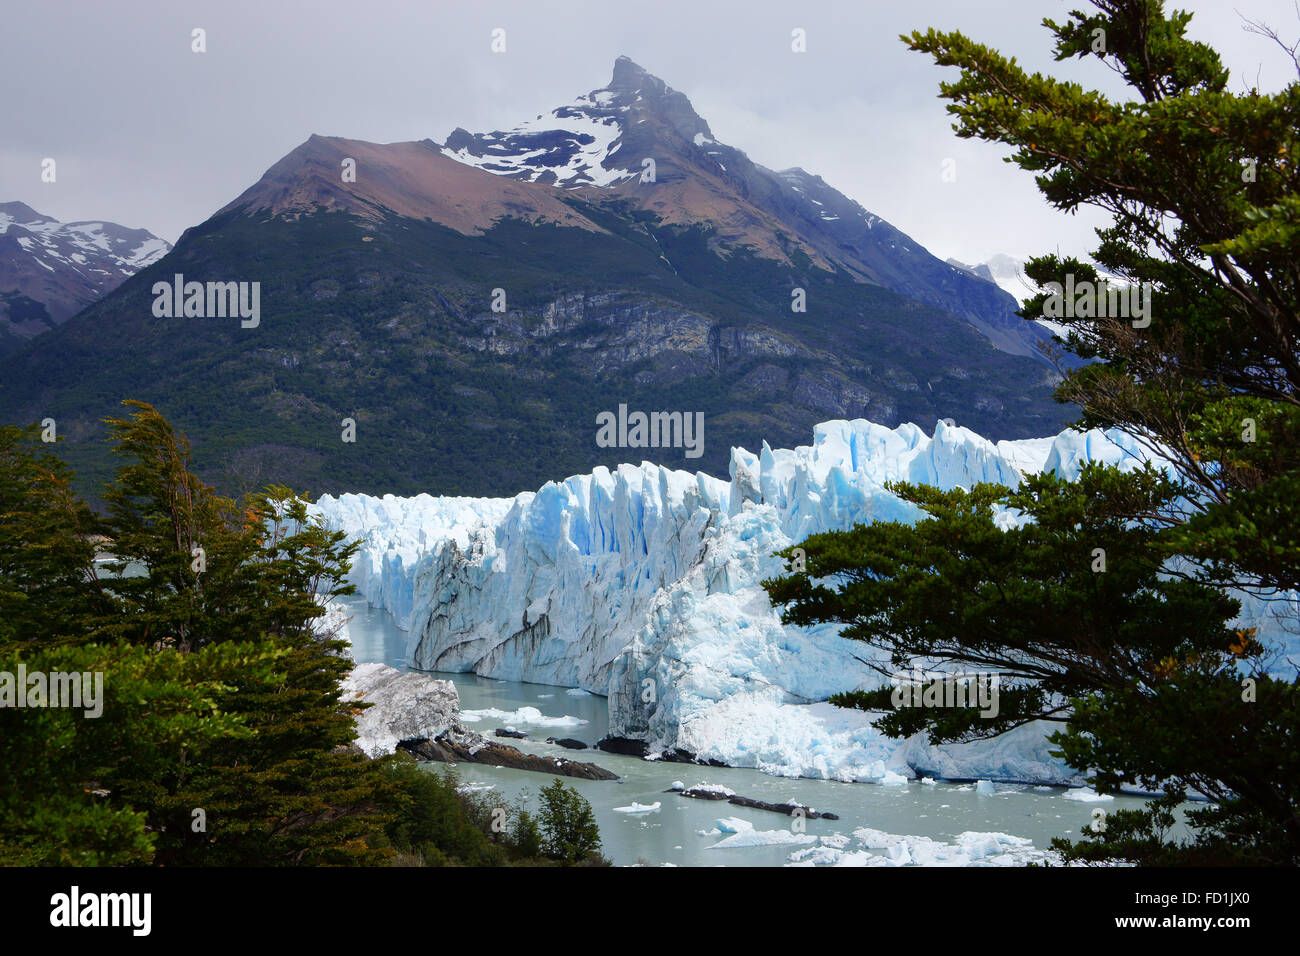 Perito Moreno glacier, Los Glaciares National Park, Patagonia, Argentina Stock Photo